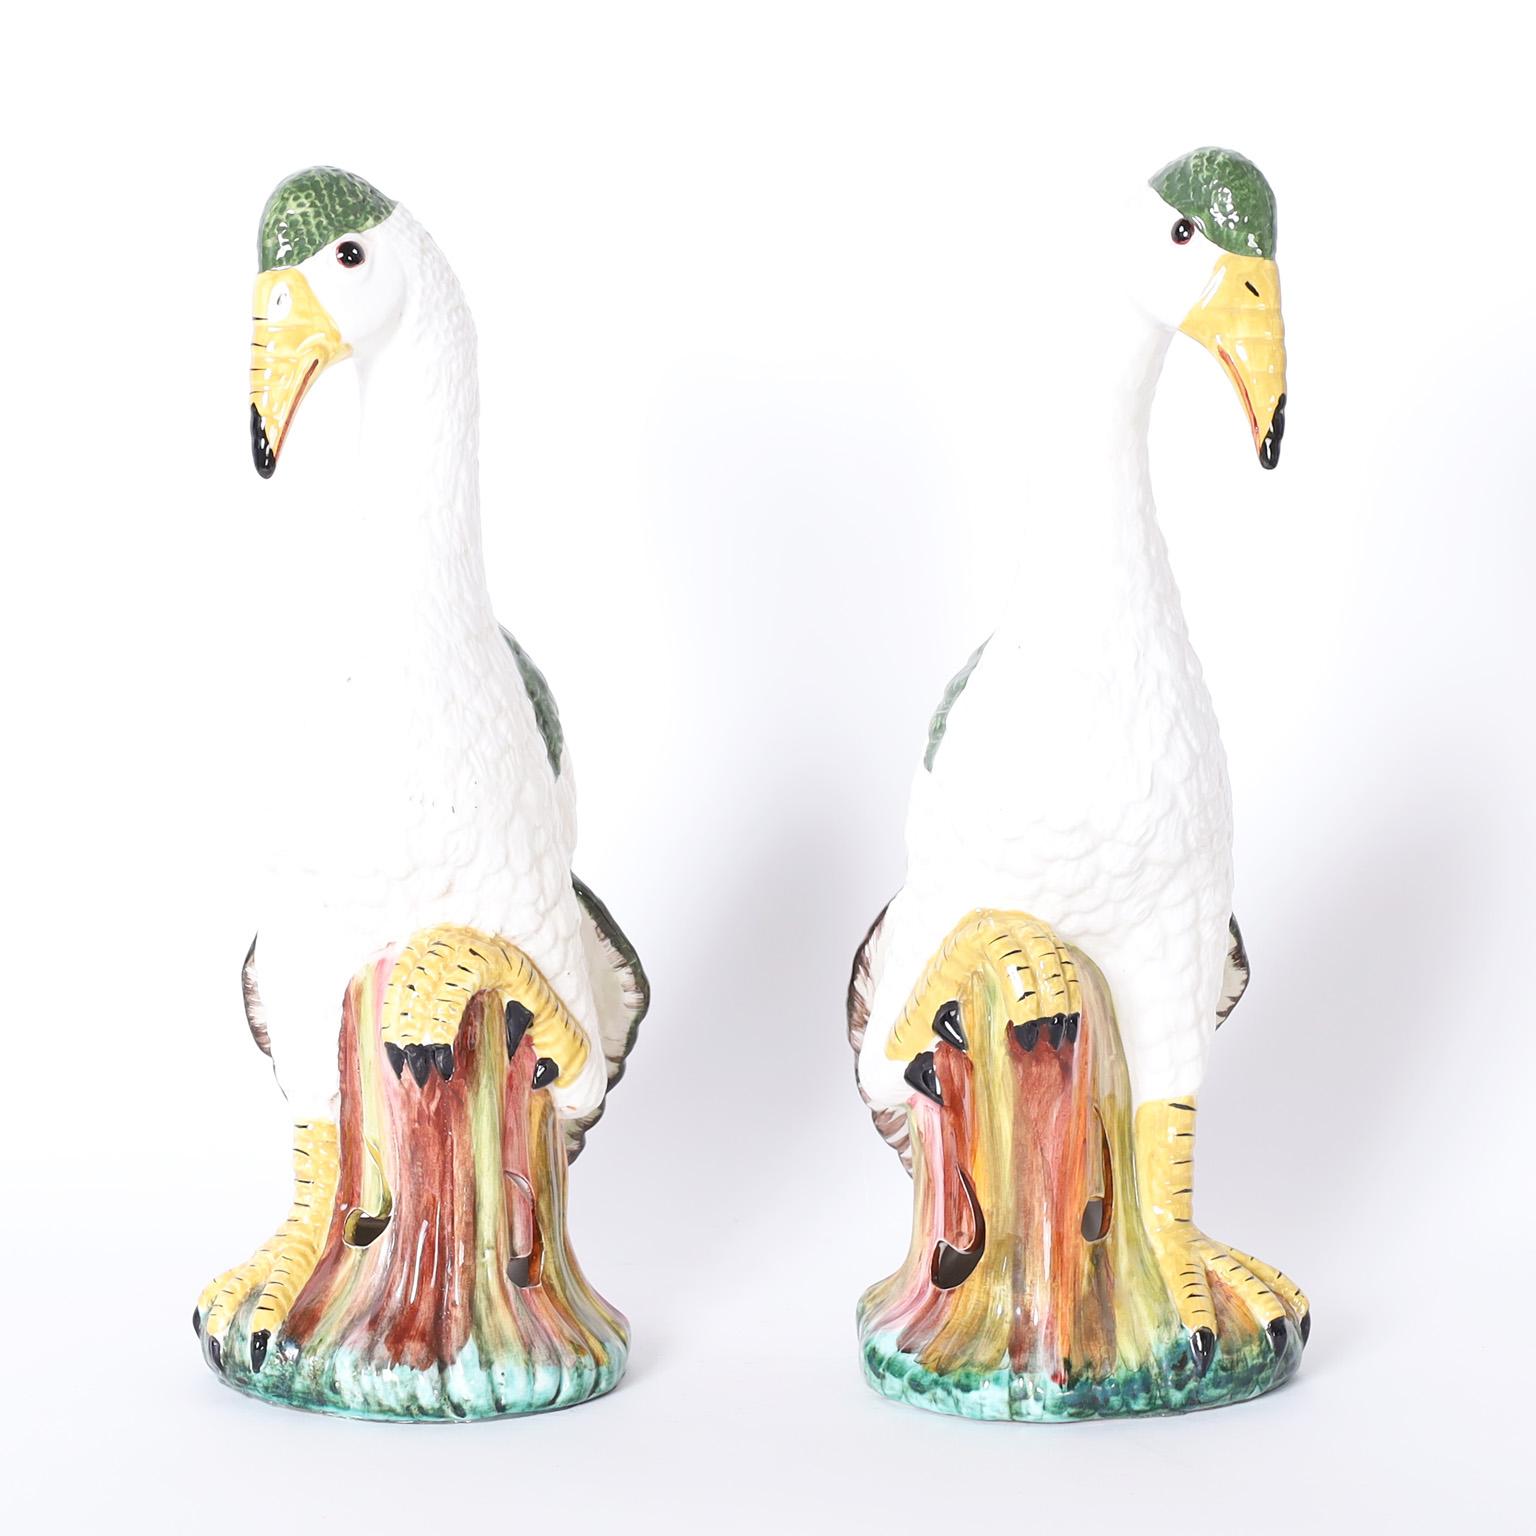 Paar italienische dekorative Vögel aus Majolika-Keramik oder Porzellan, verziert und glasiert. Auf der Unterseite signiert Meiselman.